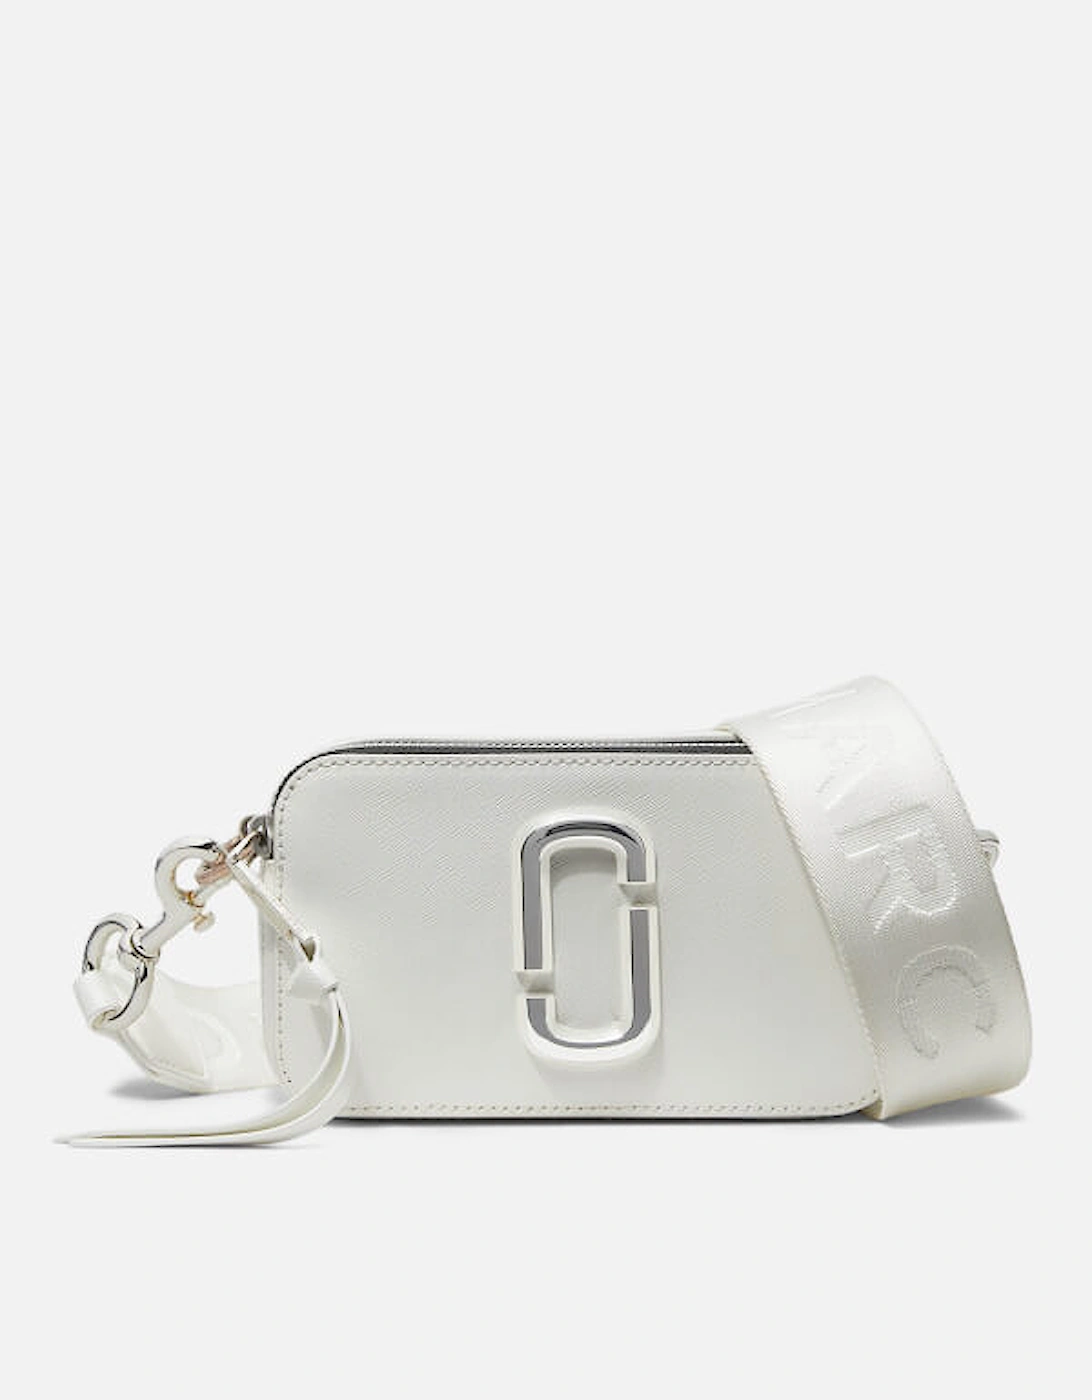 Home - Designer Handbags for Women - Designer Crossbody Bags - Women's The DTM Snapshot Bag - White - - Women's The DTM Snapshot Bag - White, 2 of 1